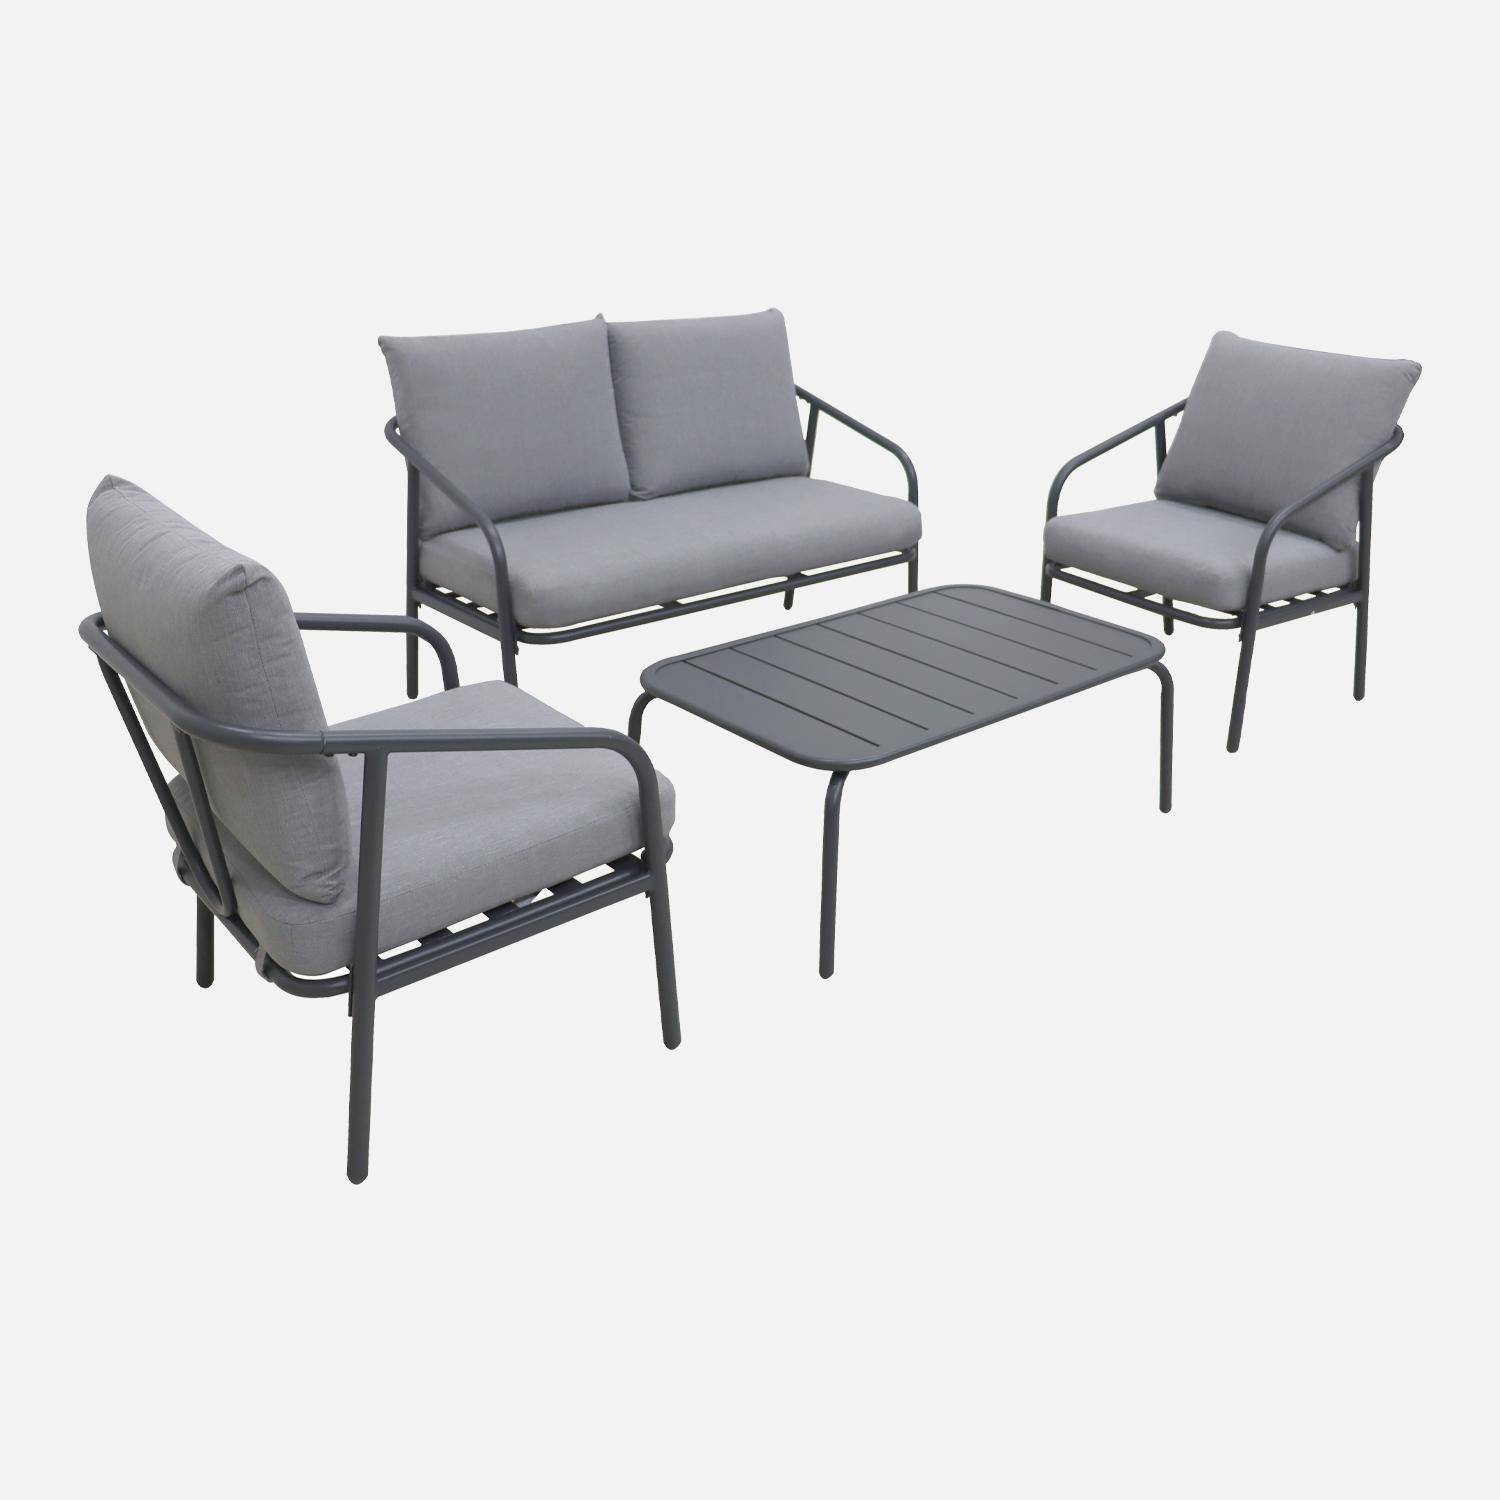 Set di mobili da giardino in metallo a 4 posti in antracite, cuscini grigi, design puro e arrotondato Photo4